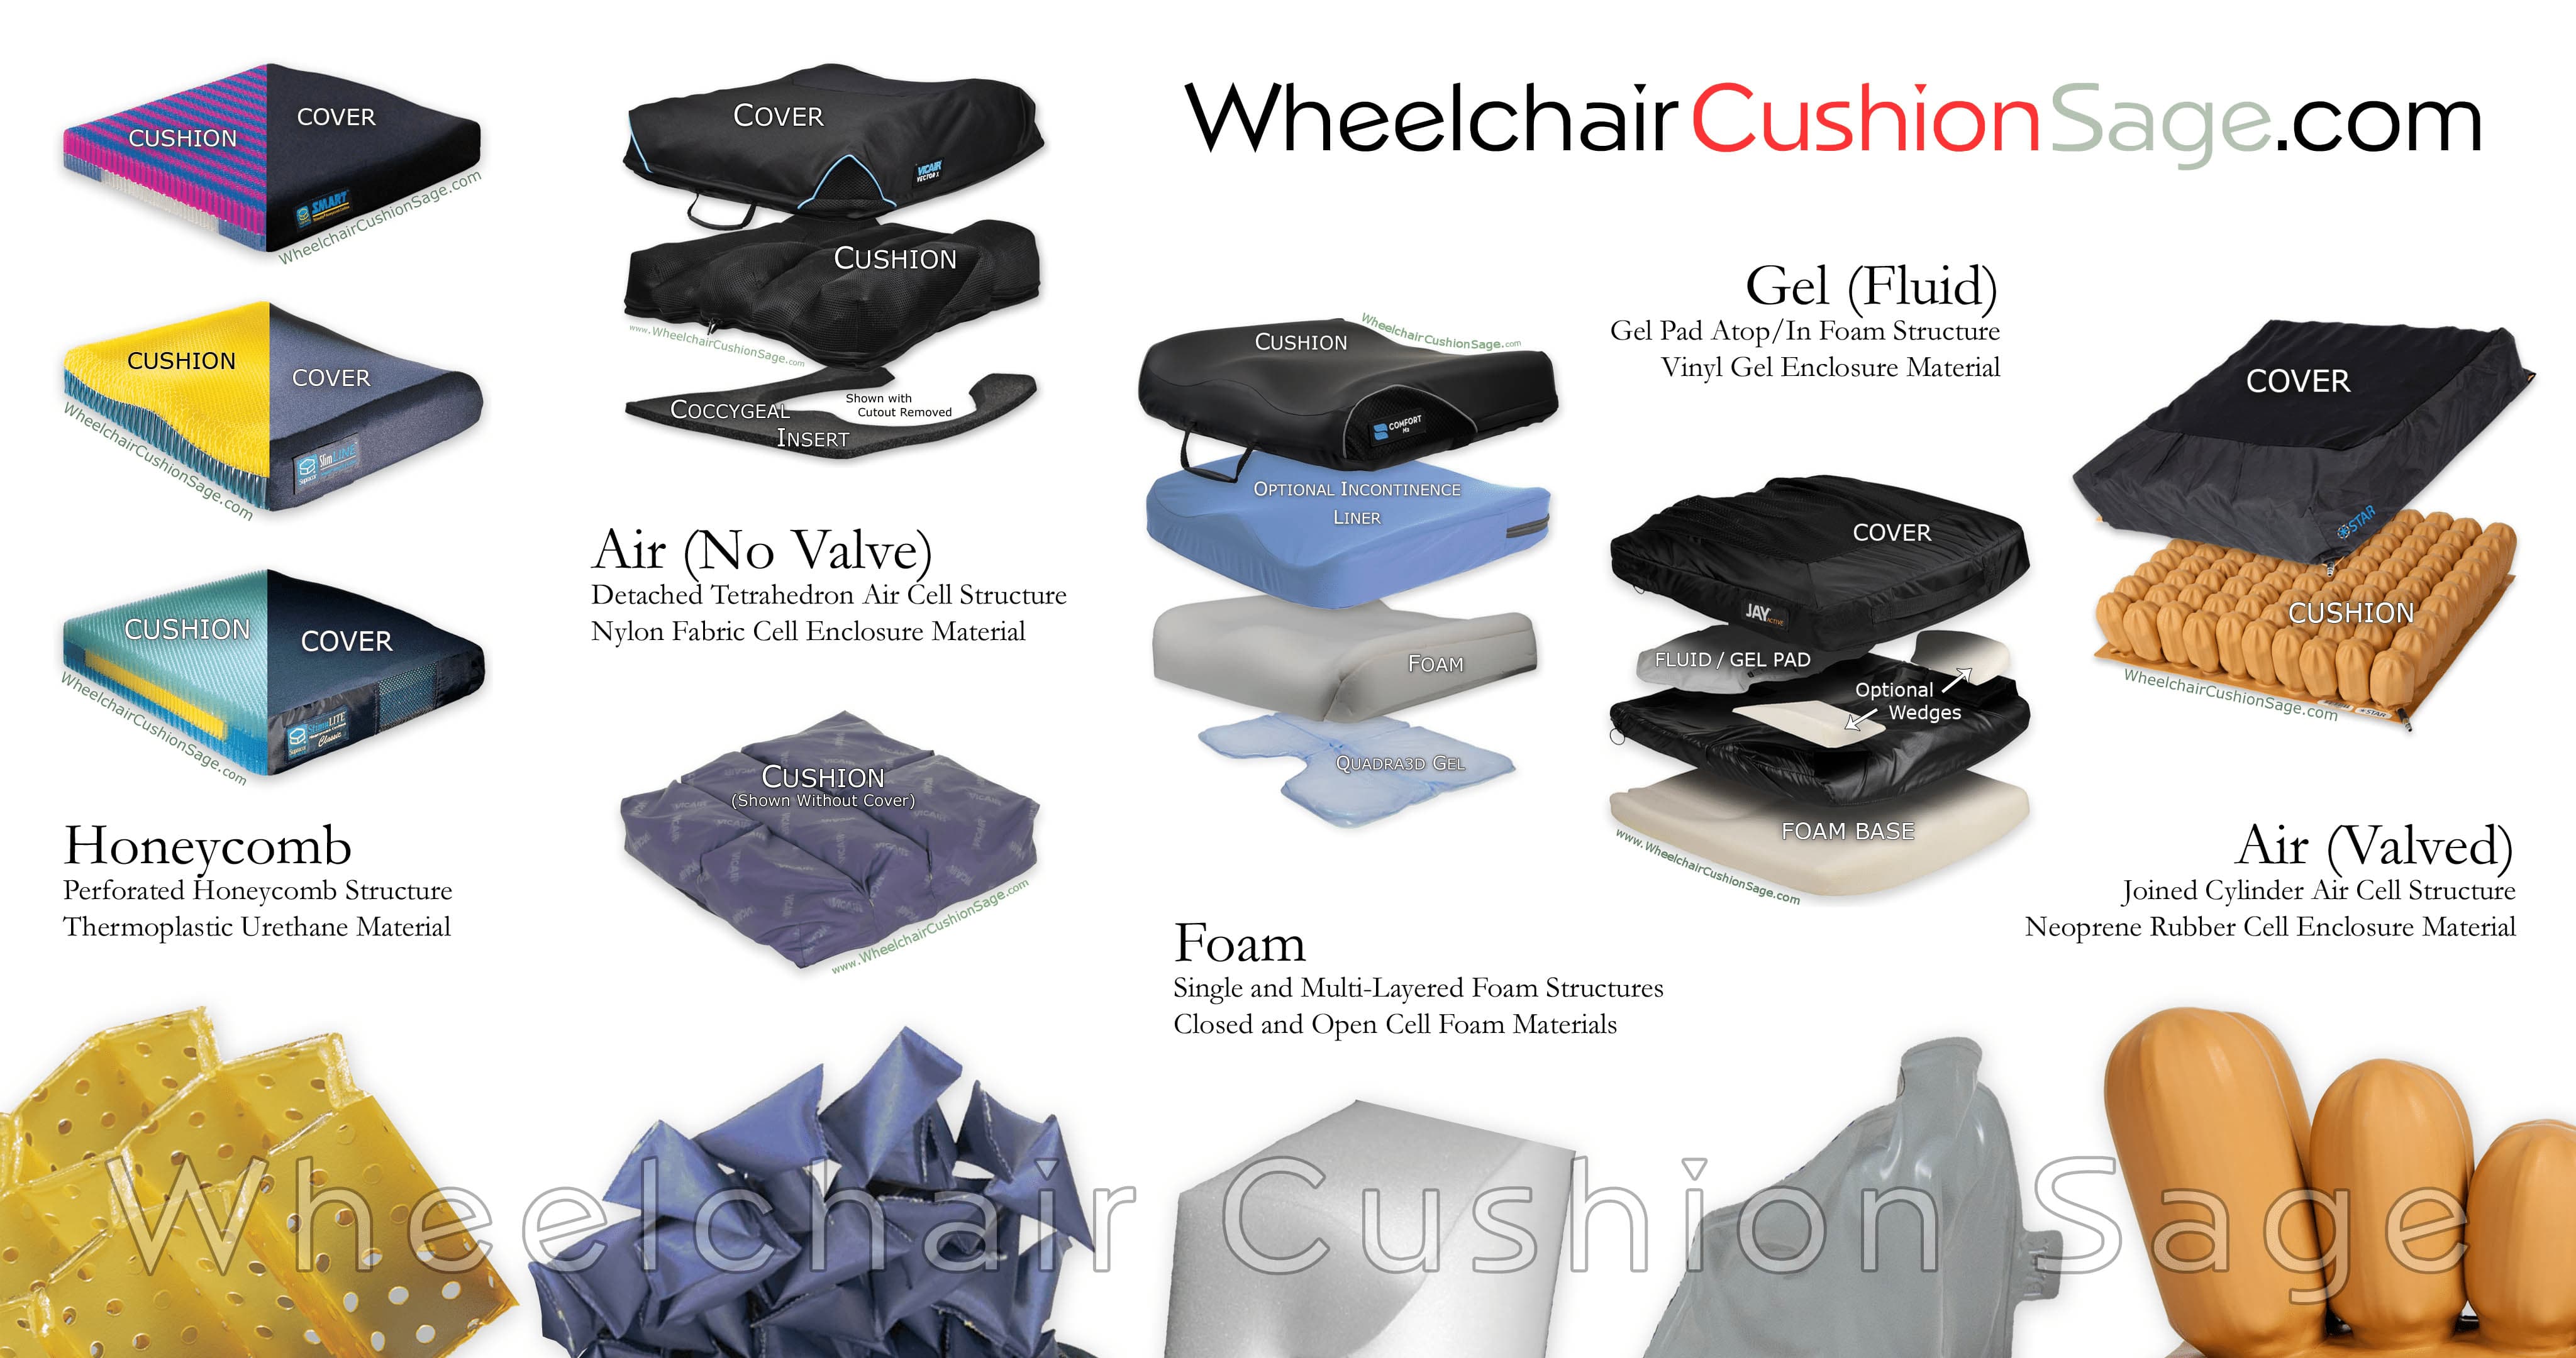 Wheelchair Cushion Sage